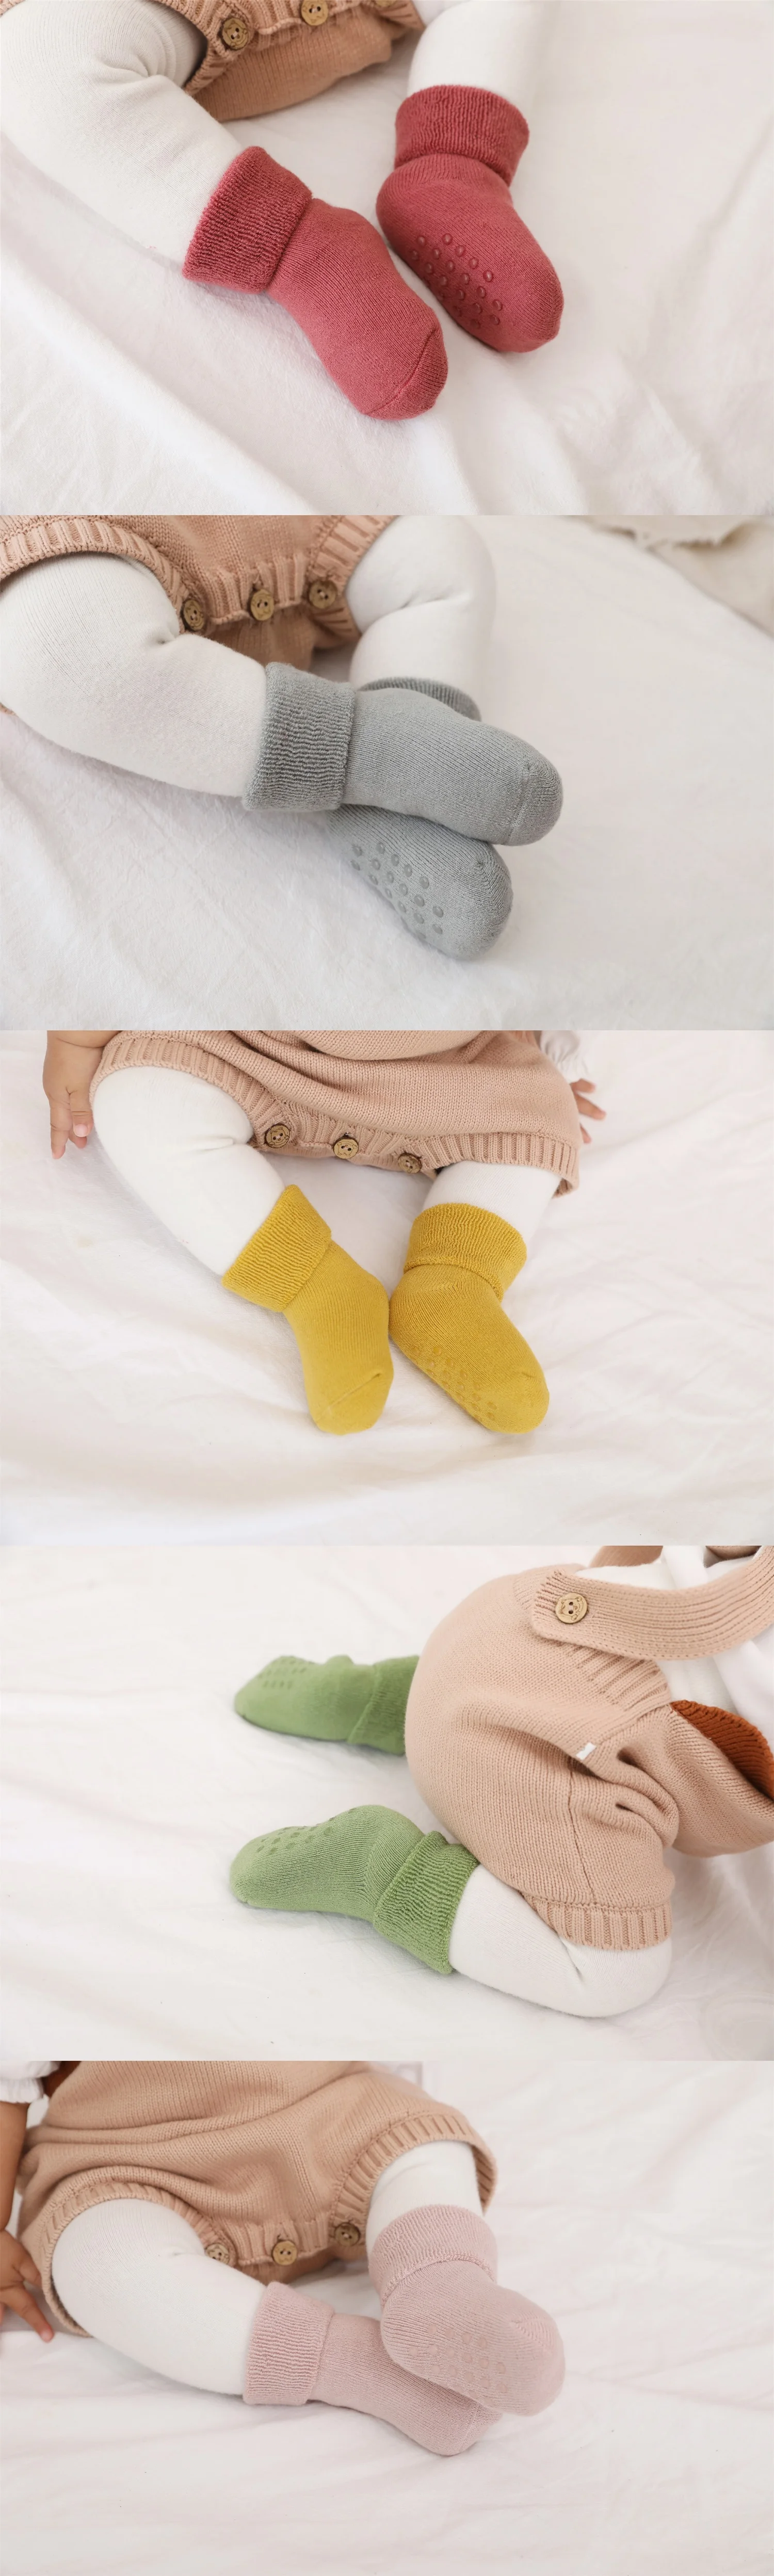 Baby socks7.jpg